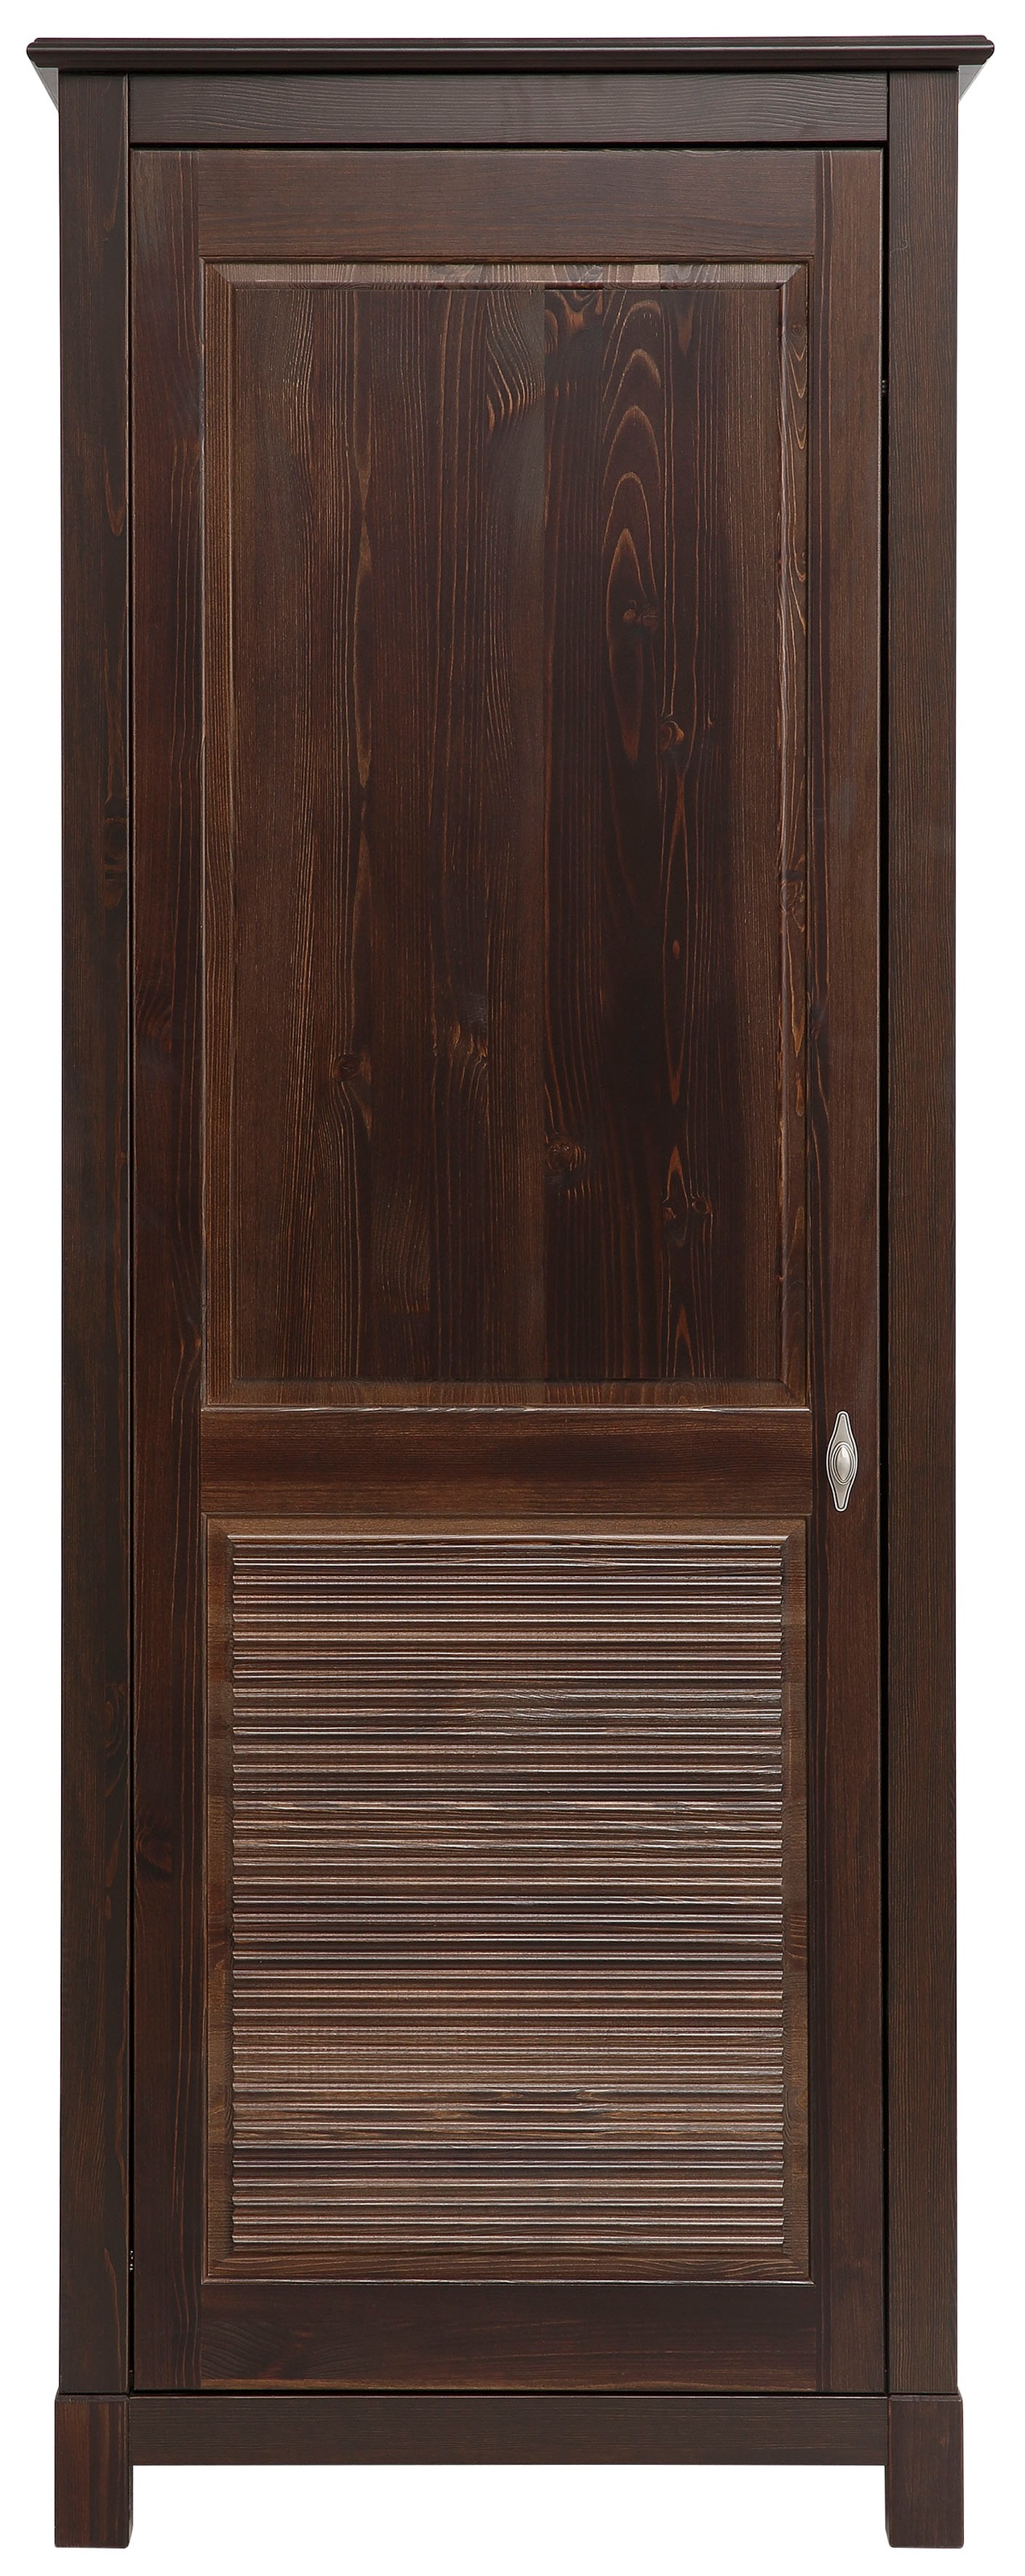 Garderobenschrank »Rauna«, Aus massiver Kiefer, mit dekorativen Fräsungen